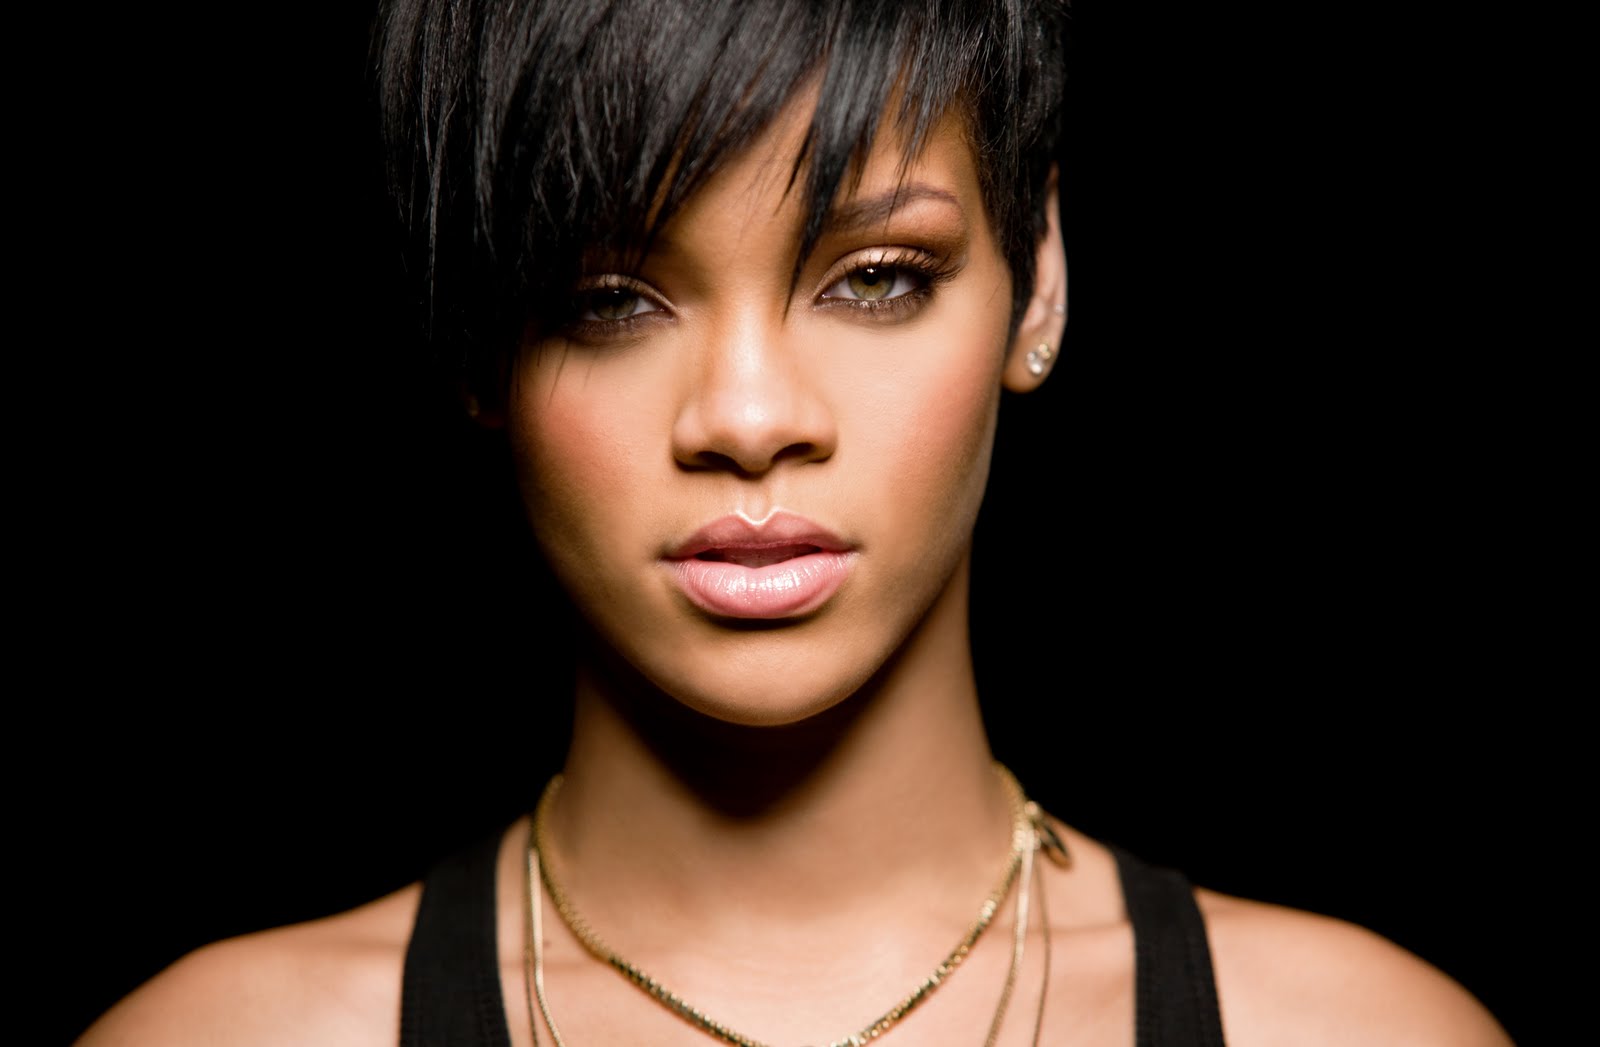 http://1.bp.blogspot.com/_8xBx7ApEPCY/Swk3mm1HnRI/AAAAAAAAM2I/wG3YelhXvWs/s1600/Rihanna.jpg